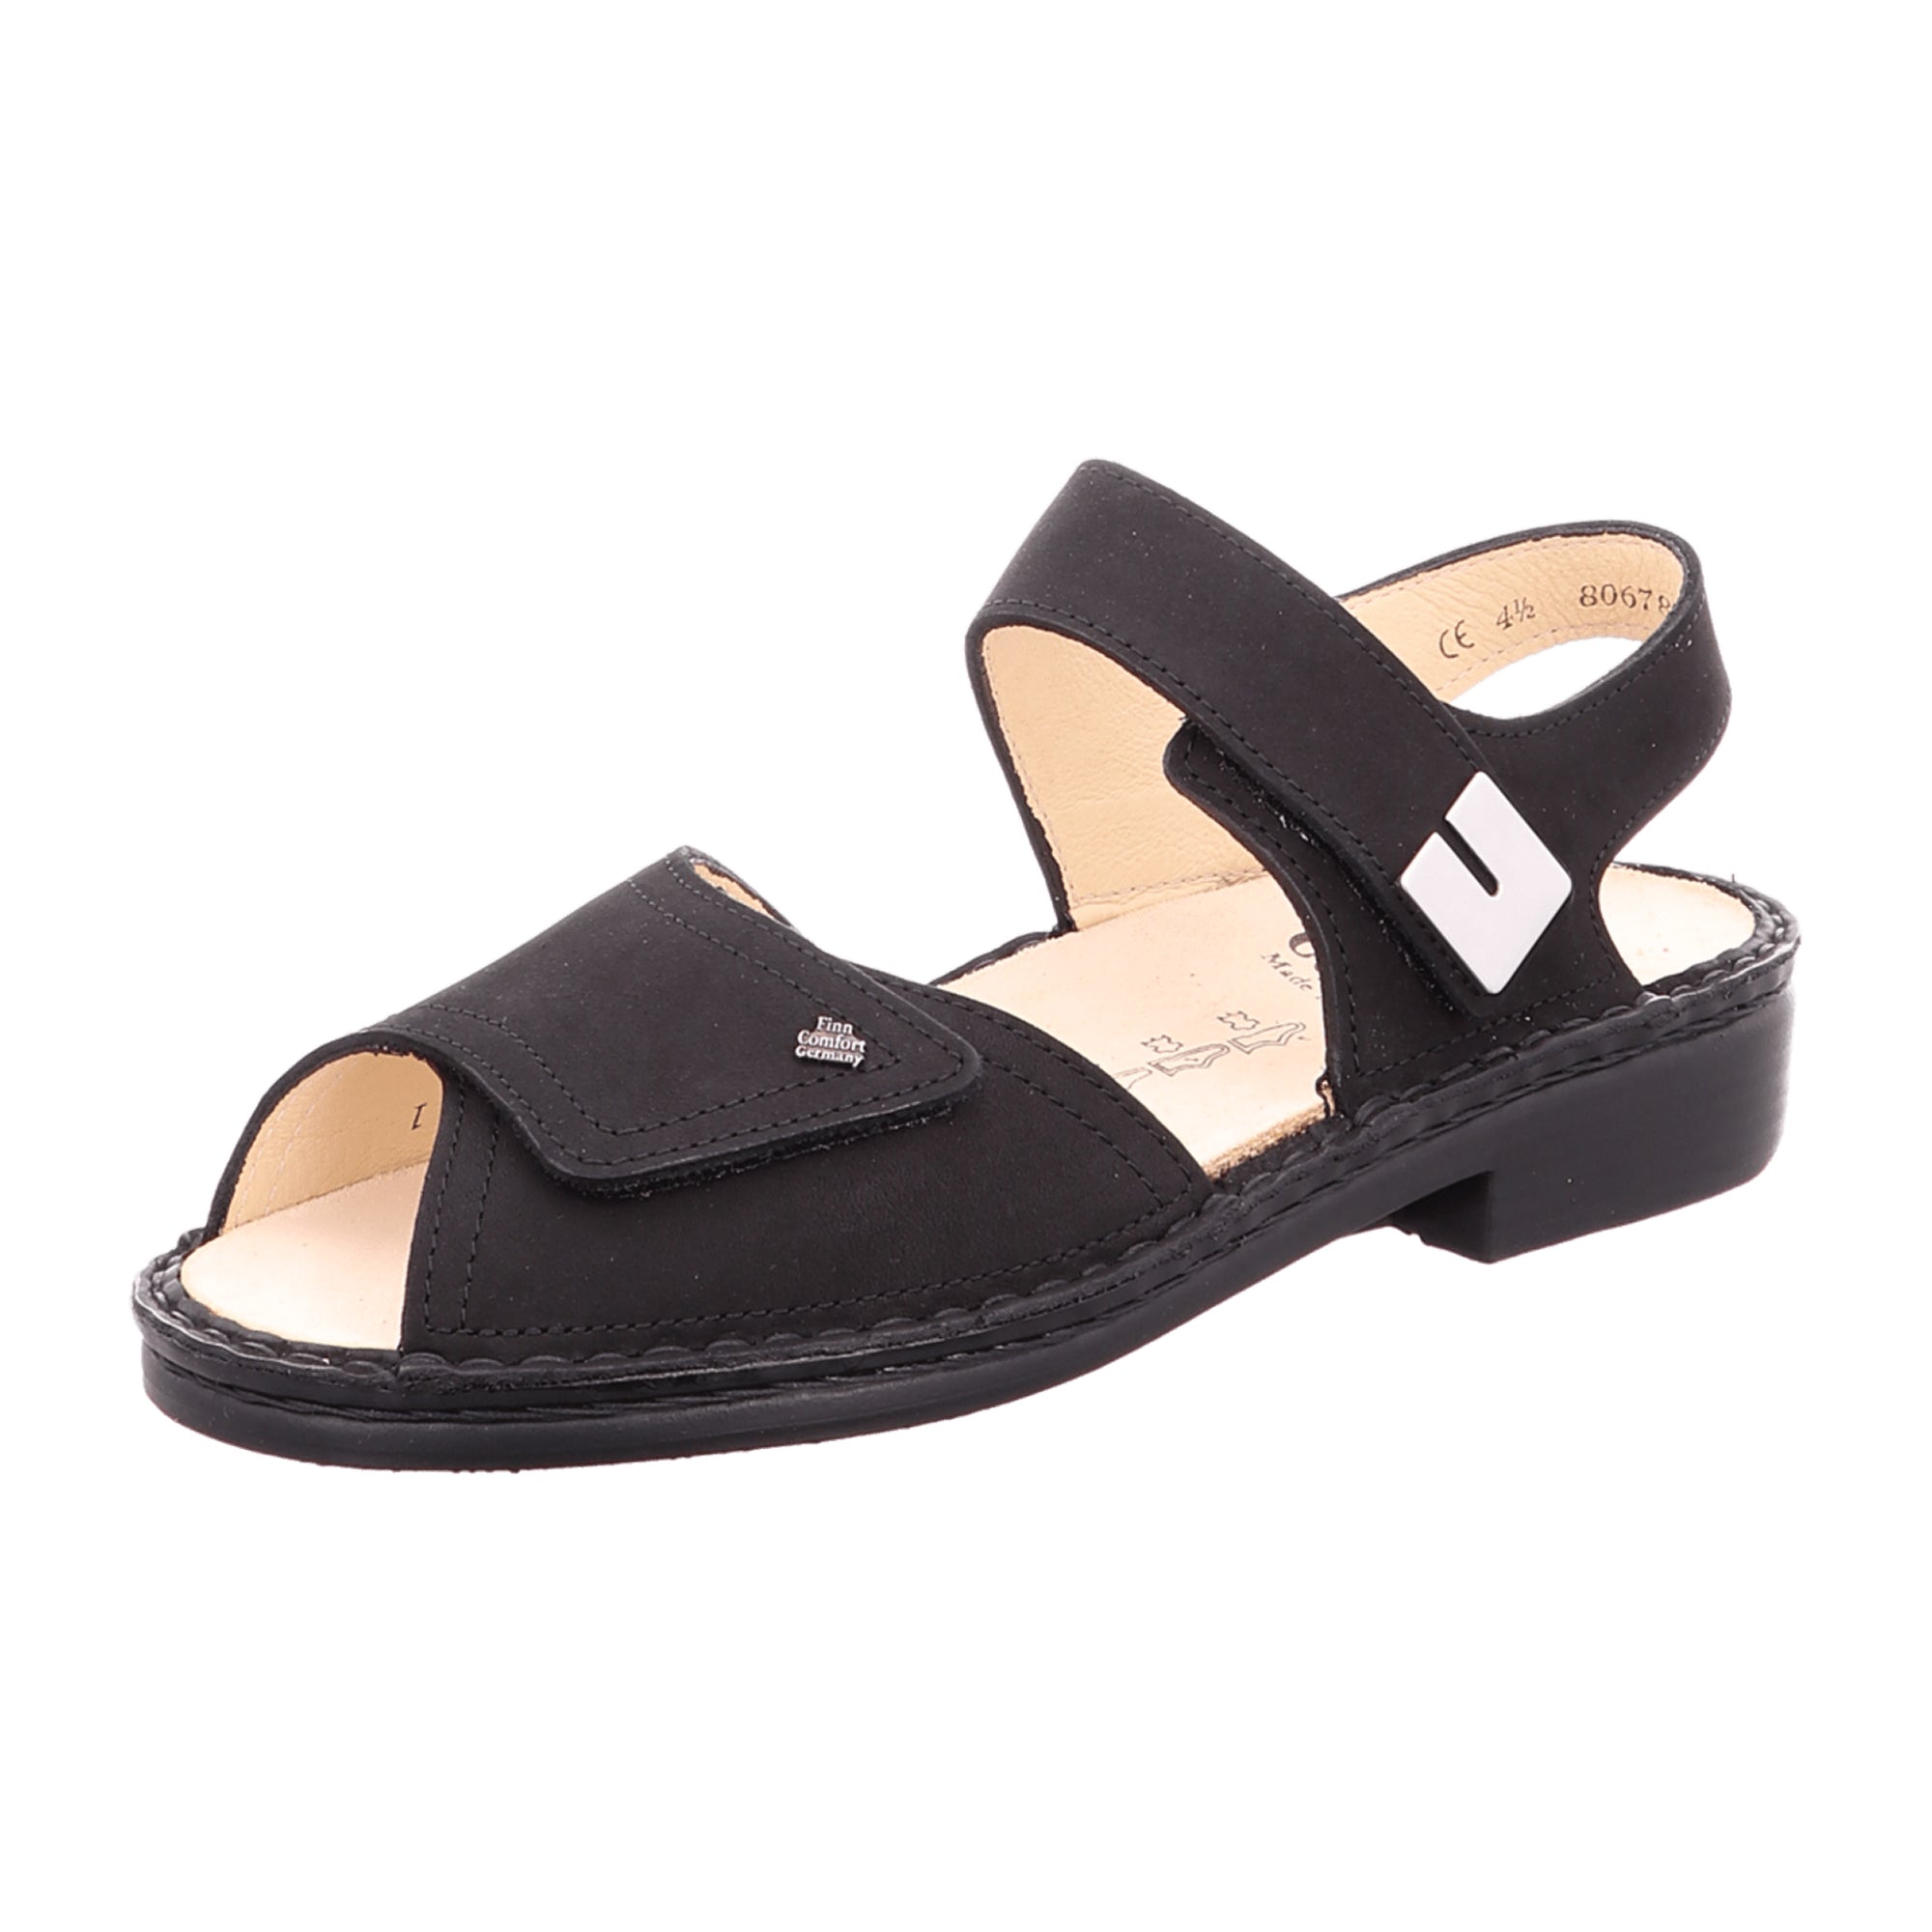 Finn Comfort Luxor Women's Comfort Sandals, Elegant Black Leather